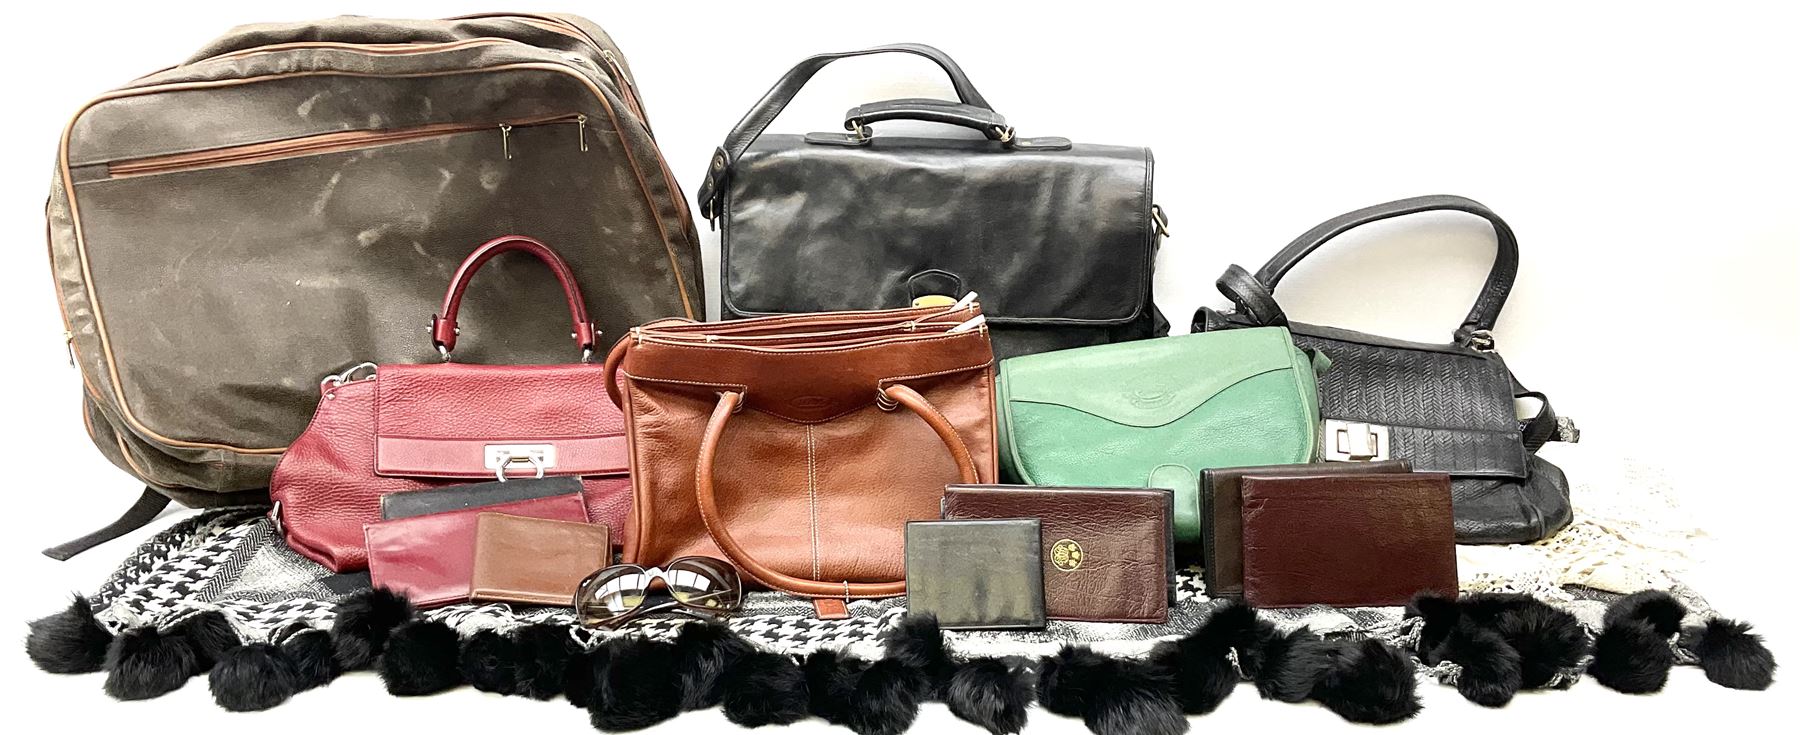 Handbags including Burberrys